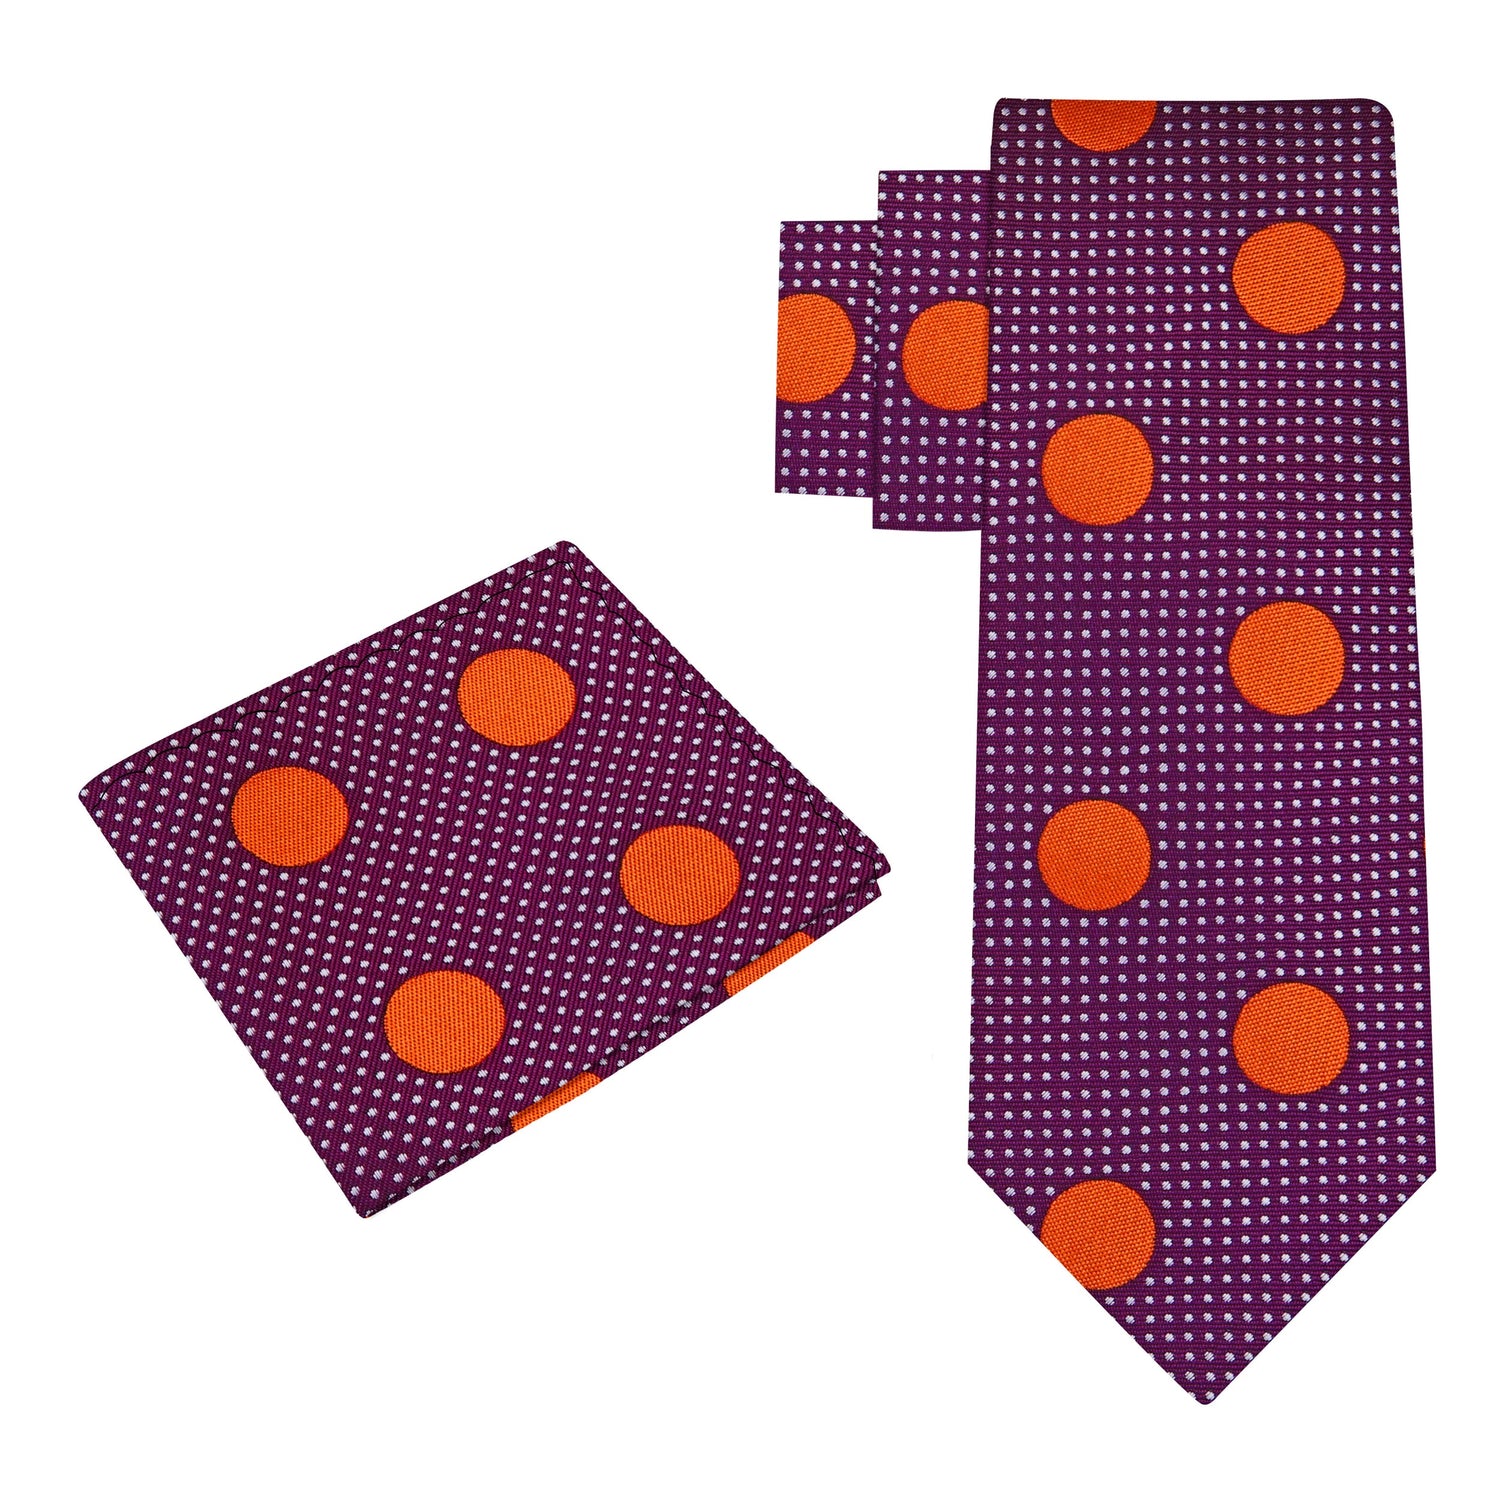 Alt View: A Purple, Orange Dots Pattern Silk Necktie, Matching Pocket Square